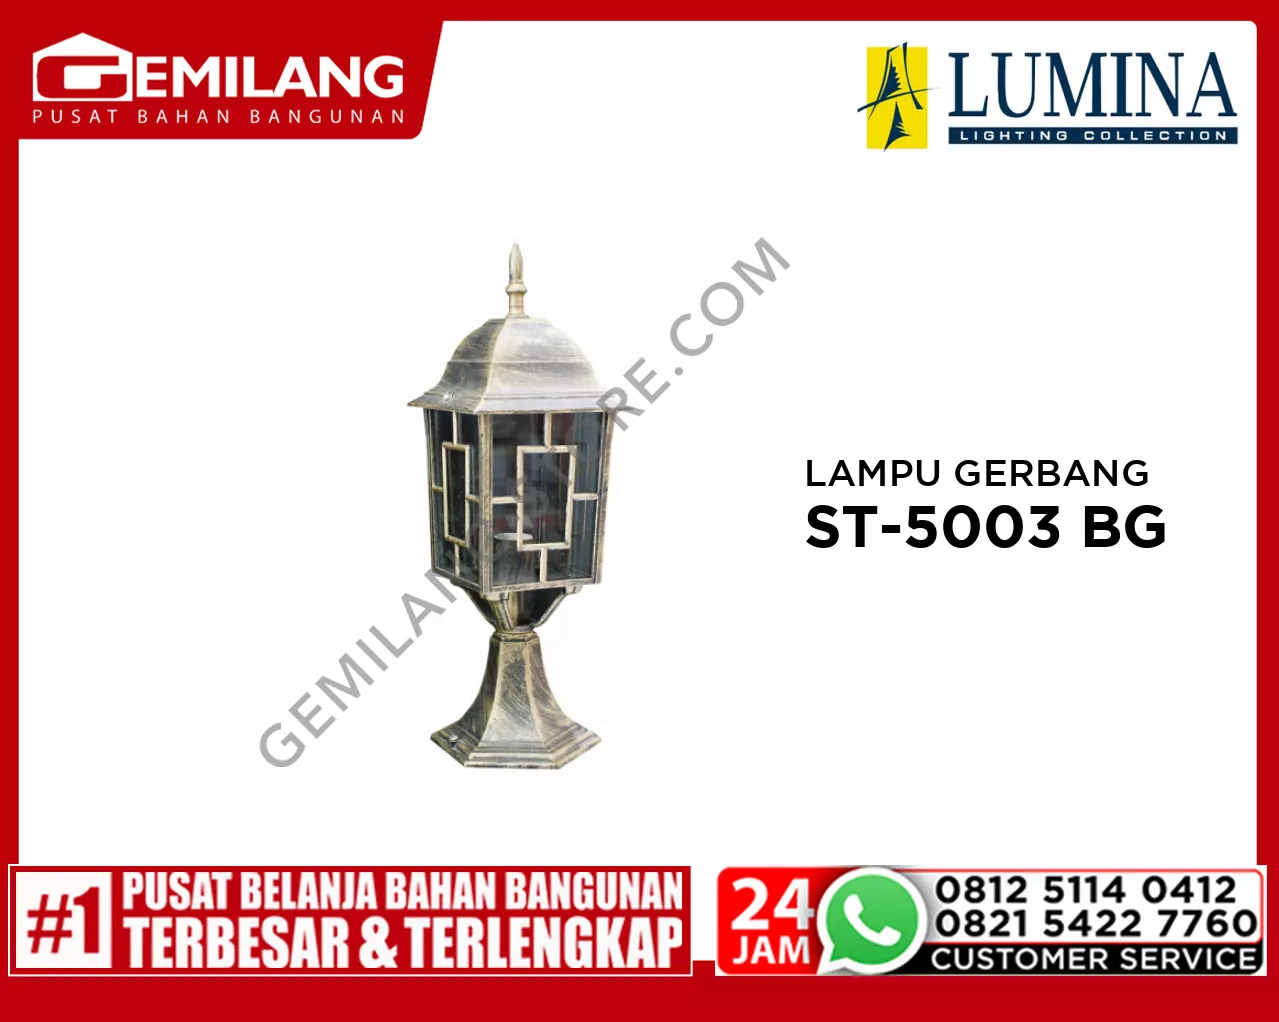 LAMPU GERBANG ST-5003 BG